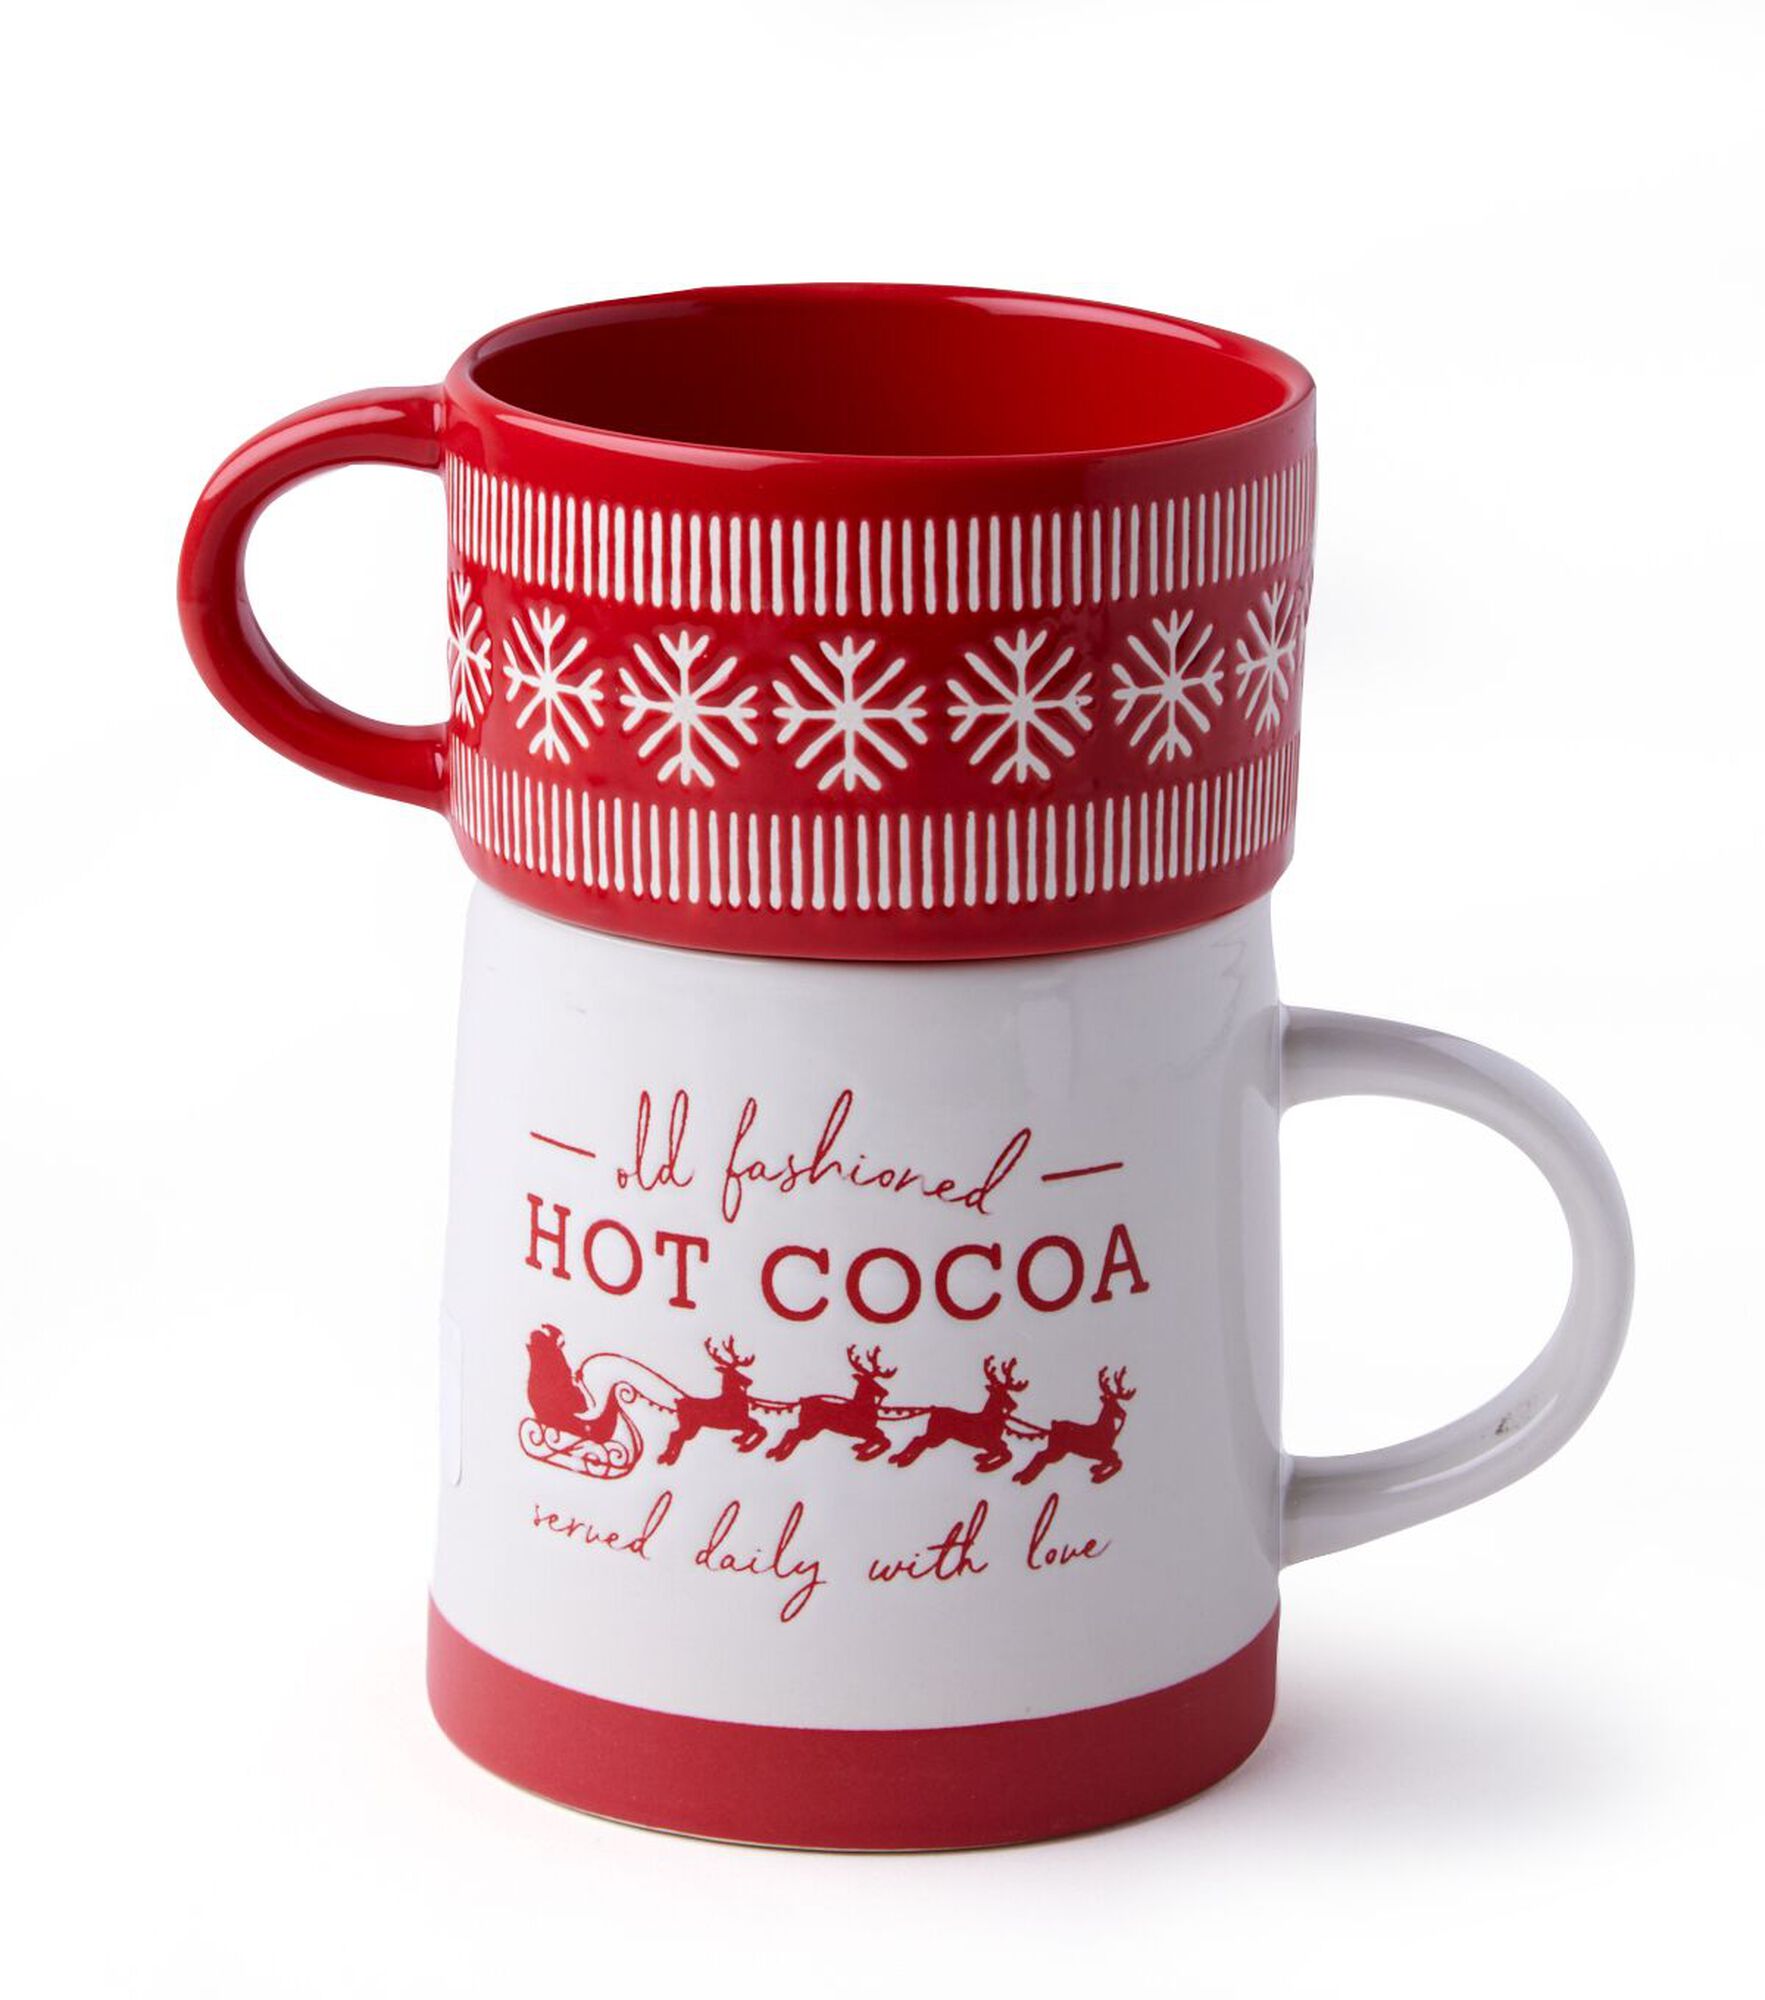 Hot Cocoa Mug & Christmas Argyle Ceramic Pour Over Coffee Dripper Set